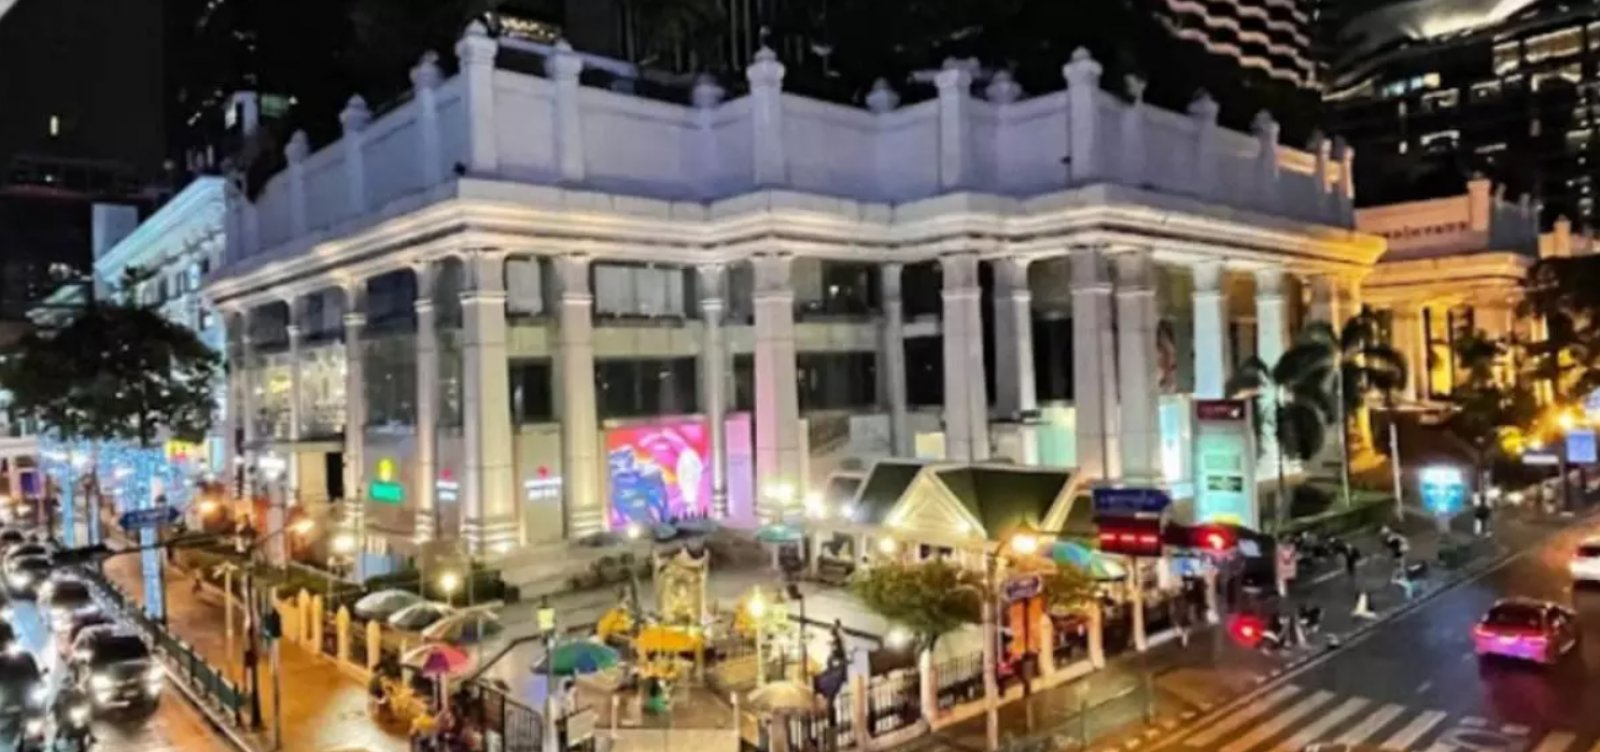 Turistas encontrados mortos em hotel na Tailândia foram envenenados com cianeto